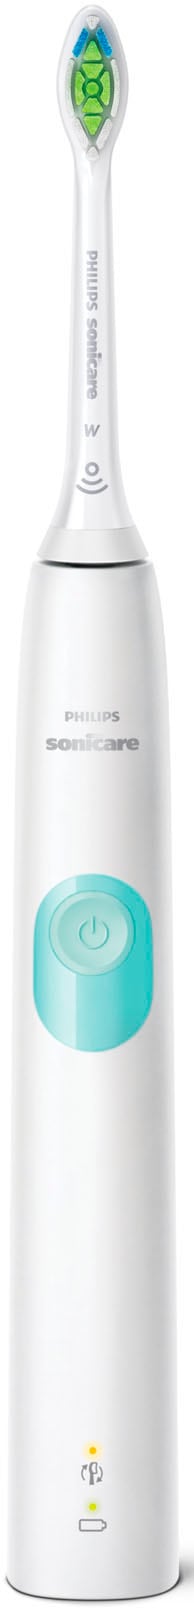 Philips Sonicare Elektrische Zahnbürste mit Raten 2 bestellen Putzprogramm Aufsteckbürsten, Schalltechnologie, auf ProtectiveClean inkl. 4300 »HX6807/51«, Clean St